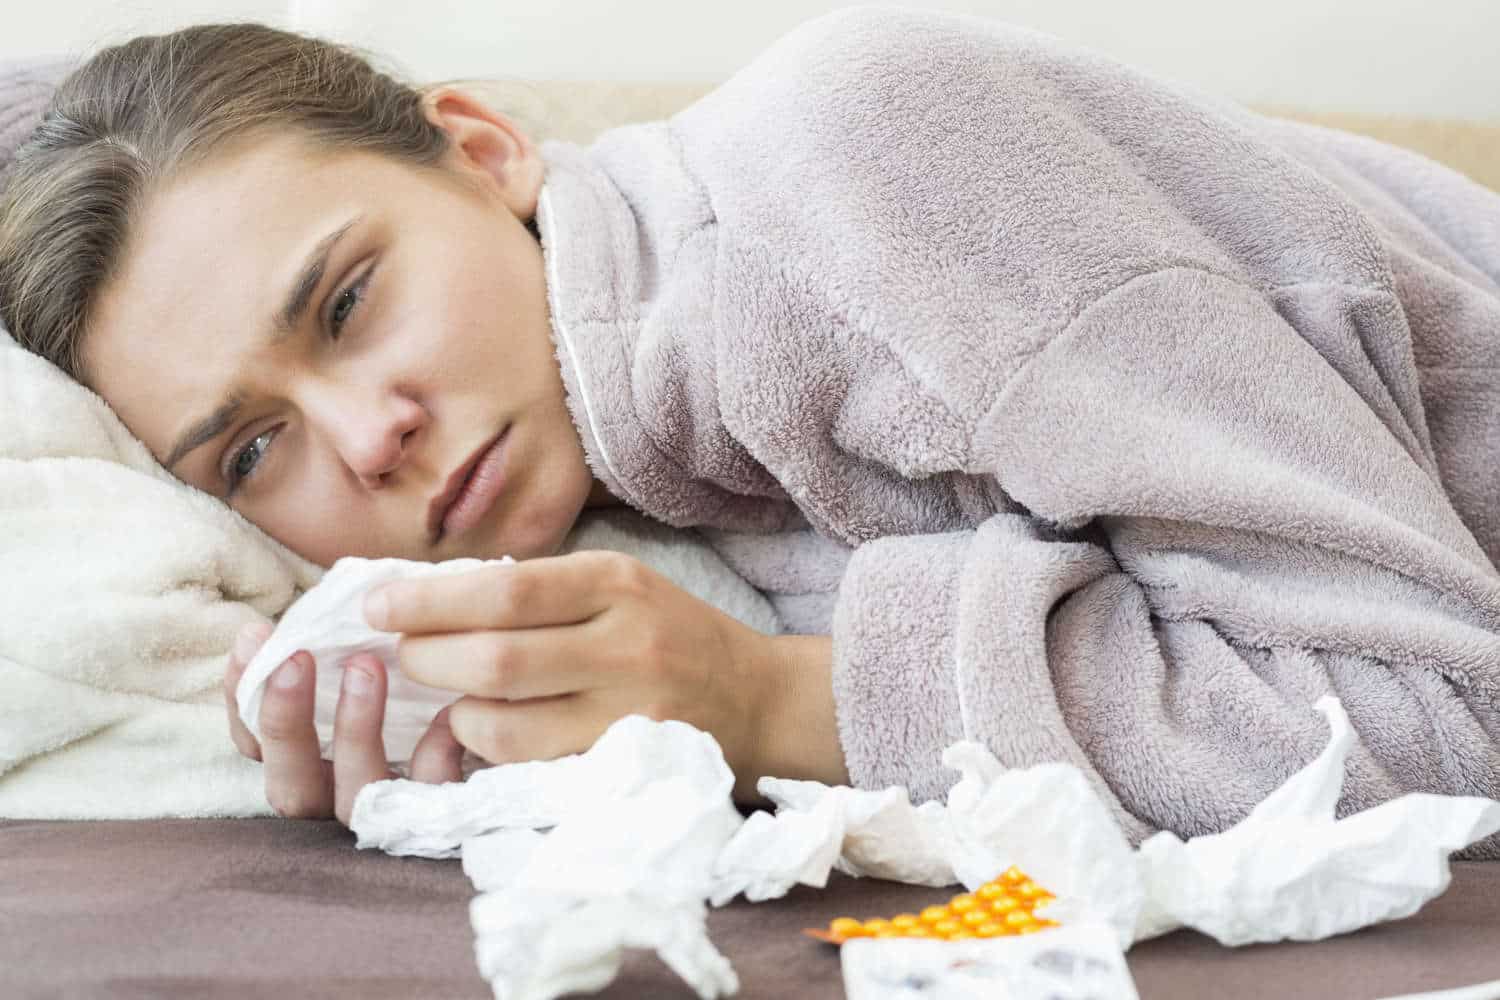 Sbalzi di temperatura, cosa fare per evitare faringite e raffreddori